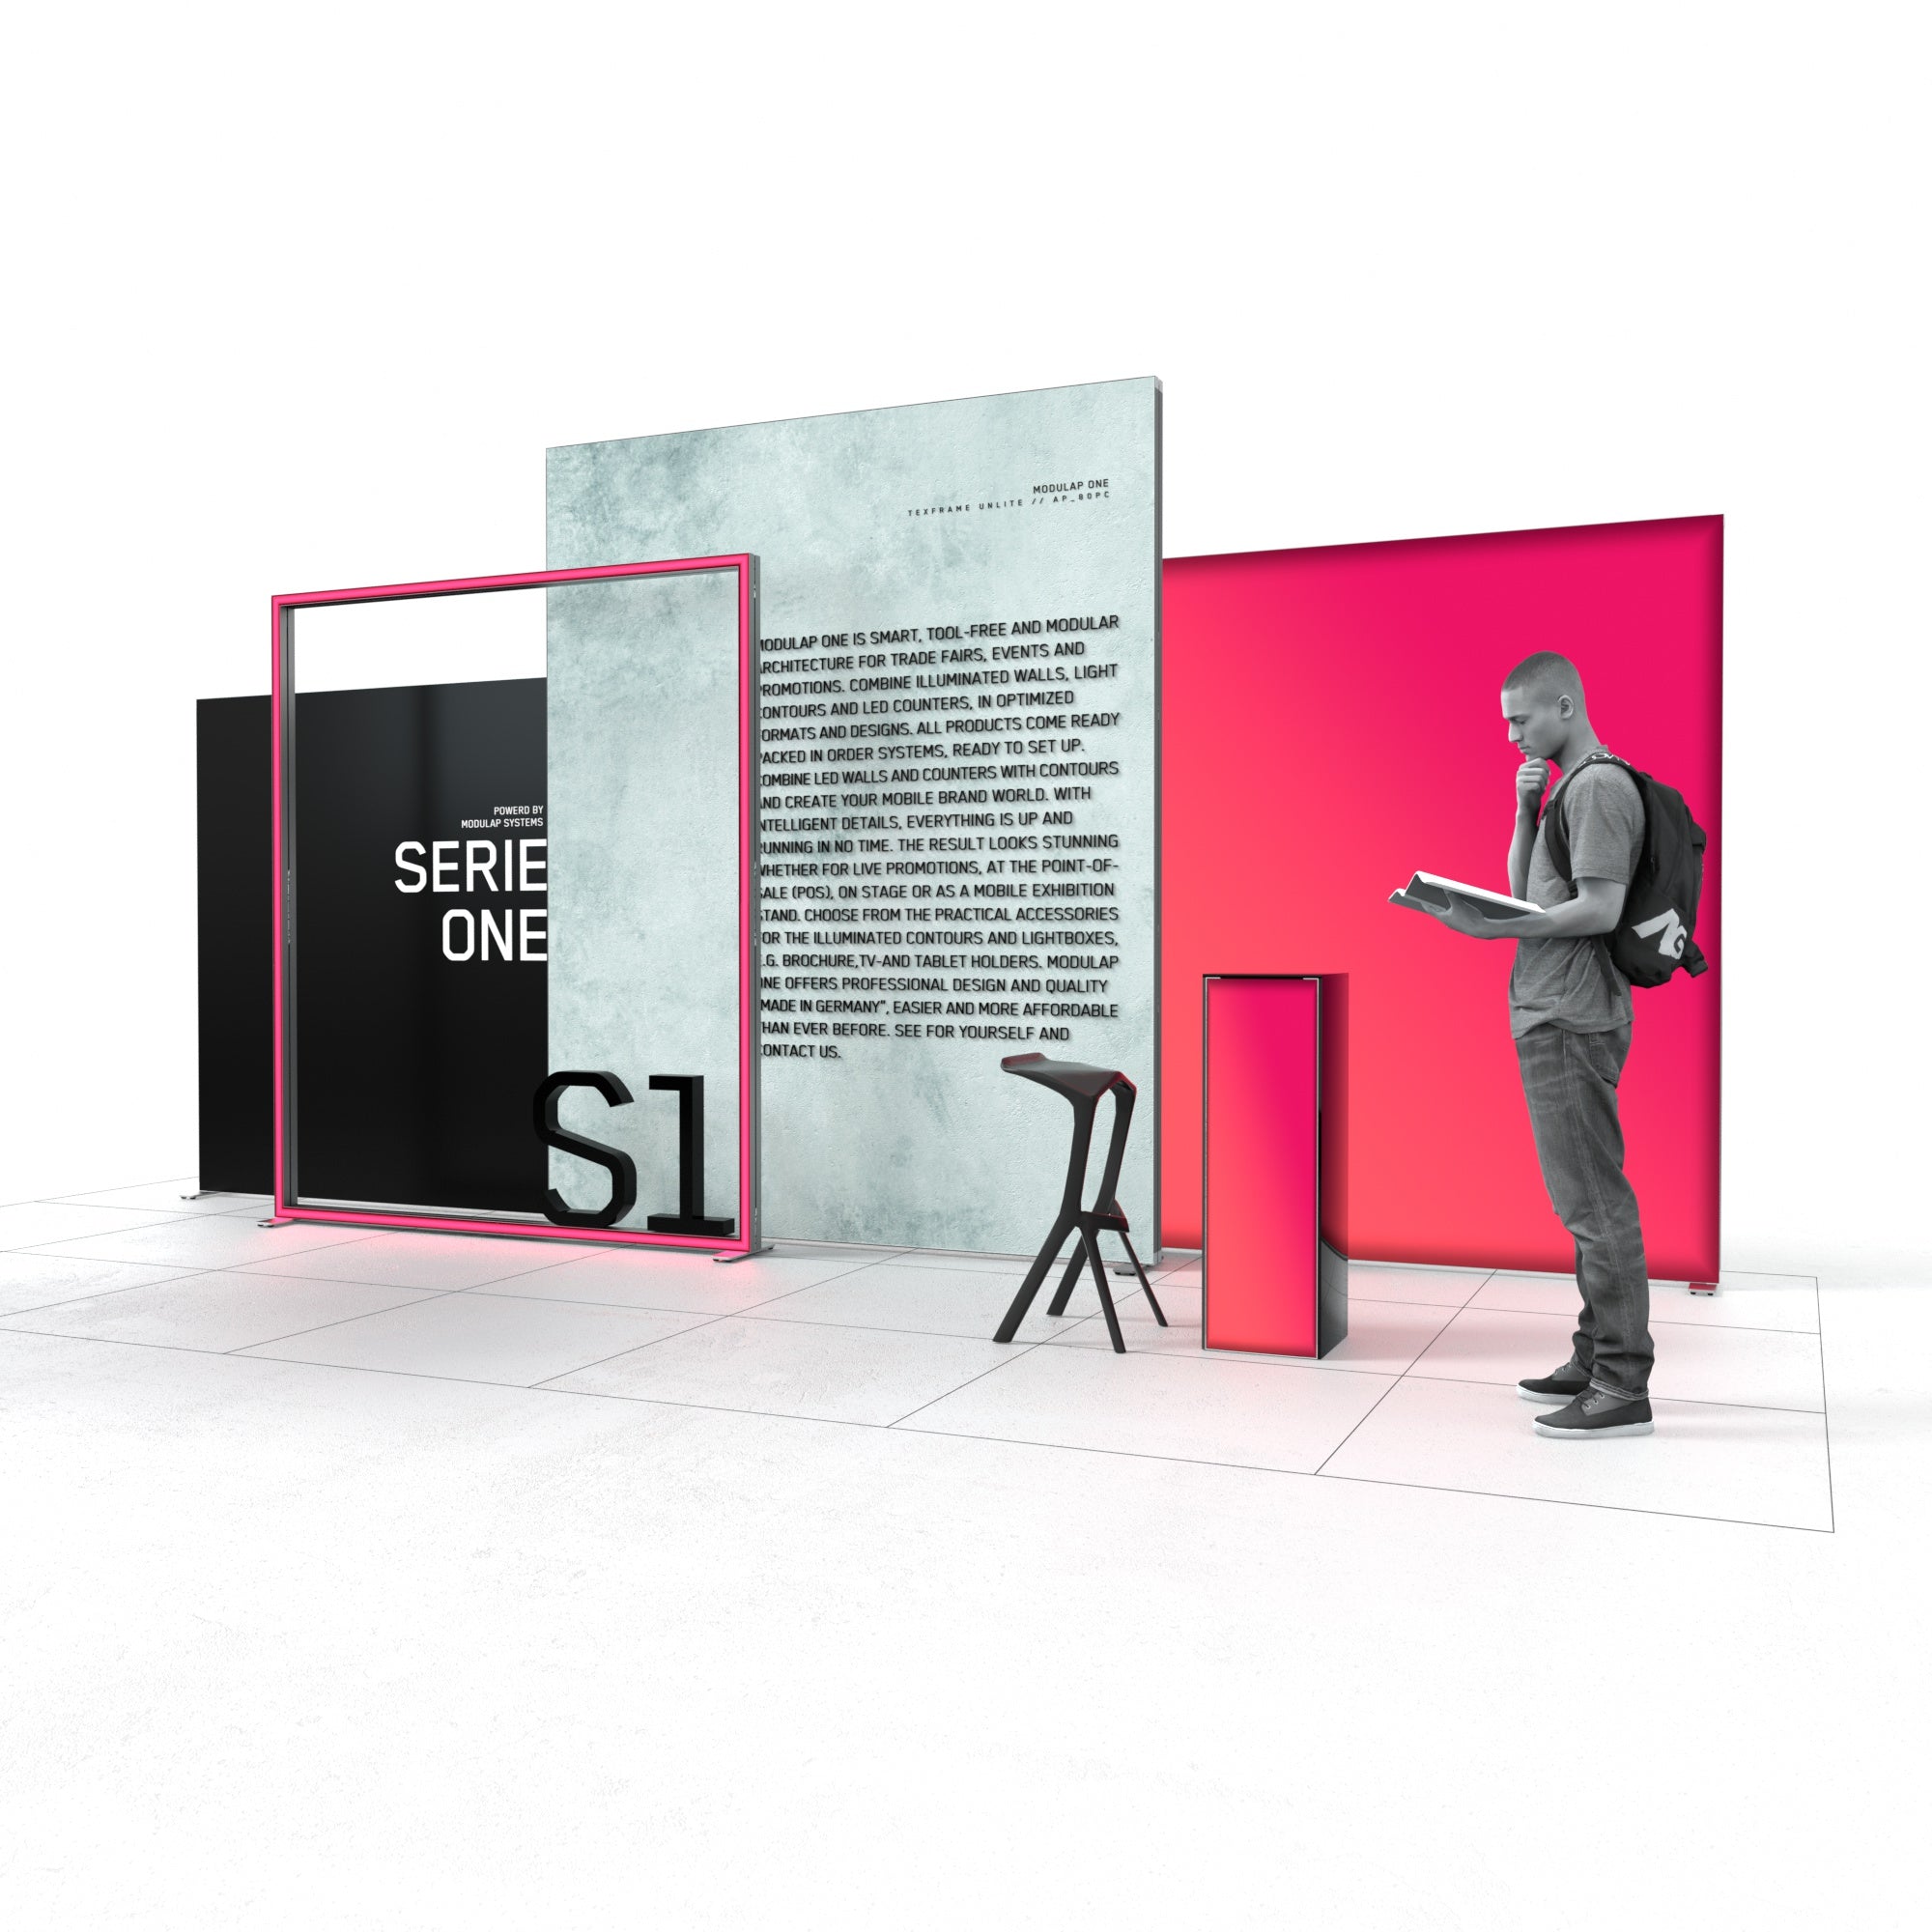 Der Eventstand von Modulap präsentiert eine stilvolle Kombination aus einem großen Texframe und einem schlanken Counter auf der rechten Seite. Daneben steht ein Mann, der aufmerksam einen Prospekt liest. Der Stand verbindet modernes Design mit funktionalen Präsentationsflächen.